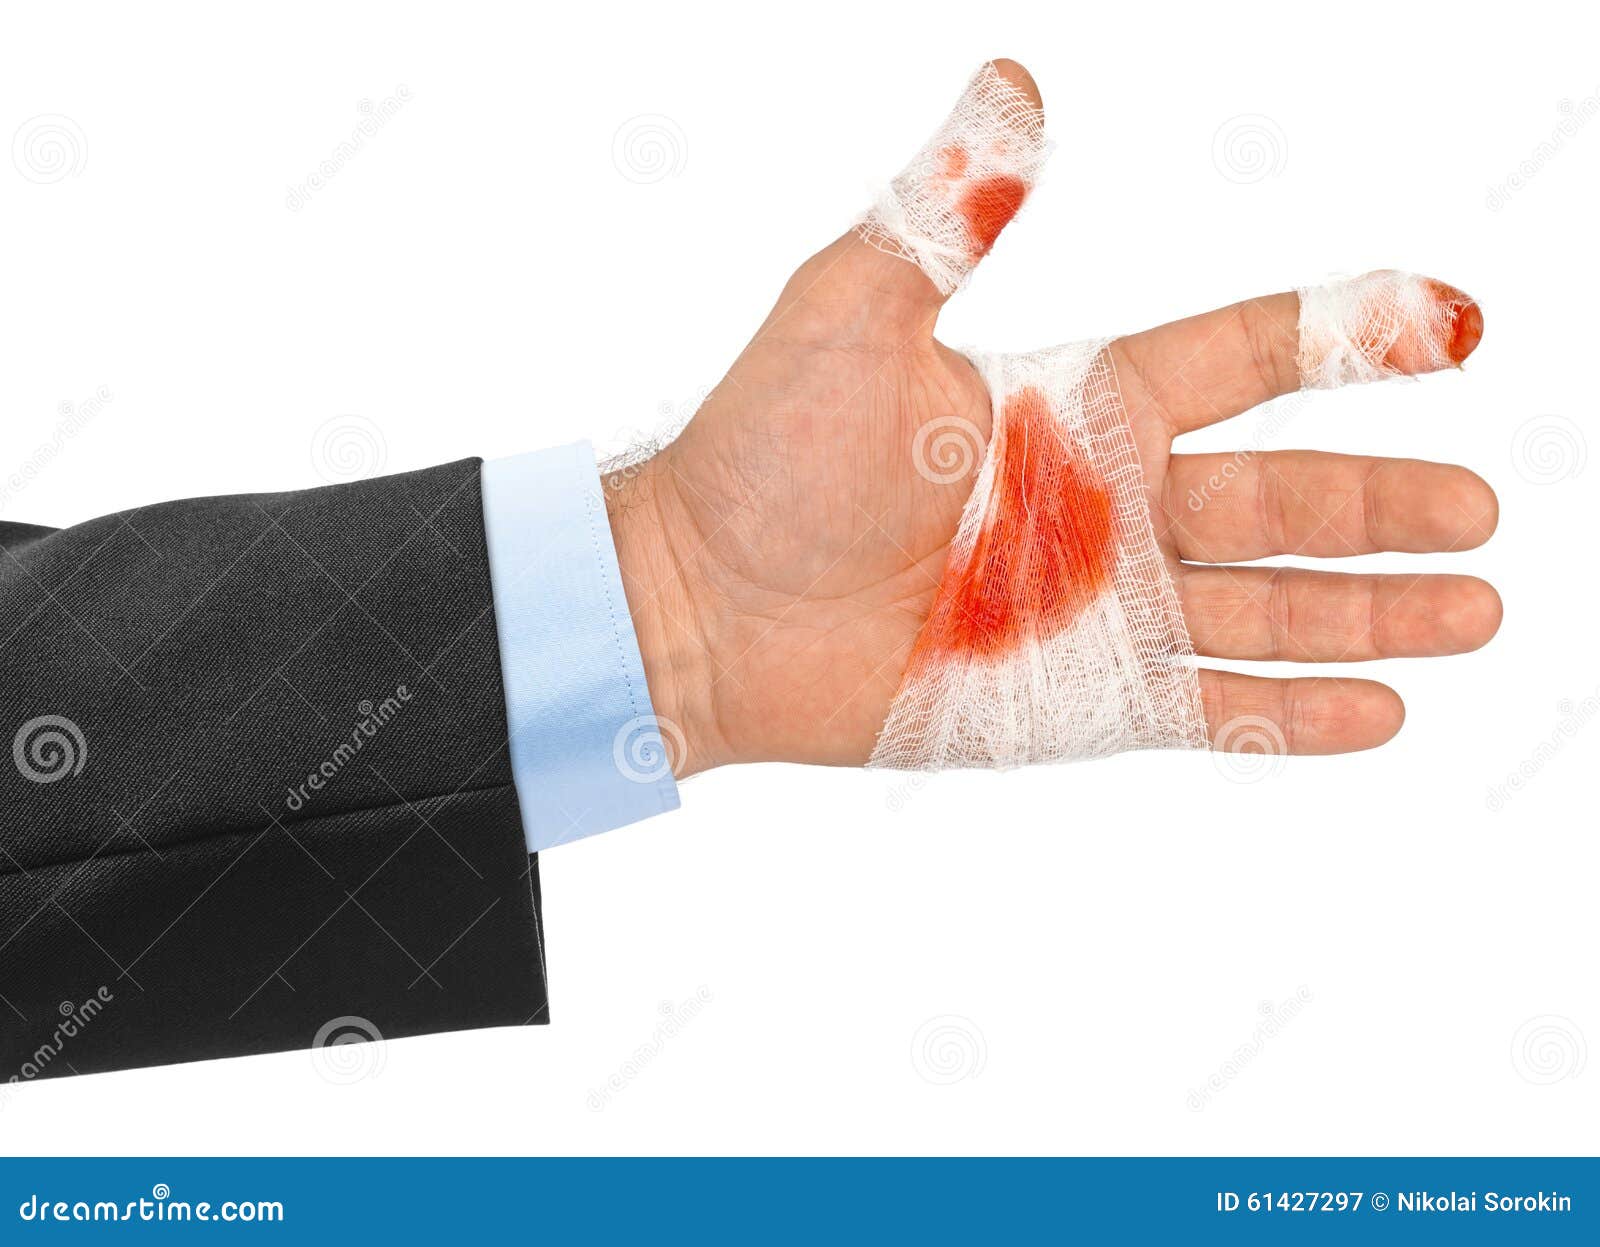 Hand with Blood and Bandage Stock Image - Image of pain, bandaged: 61427297